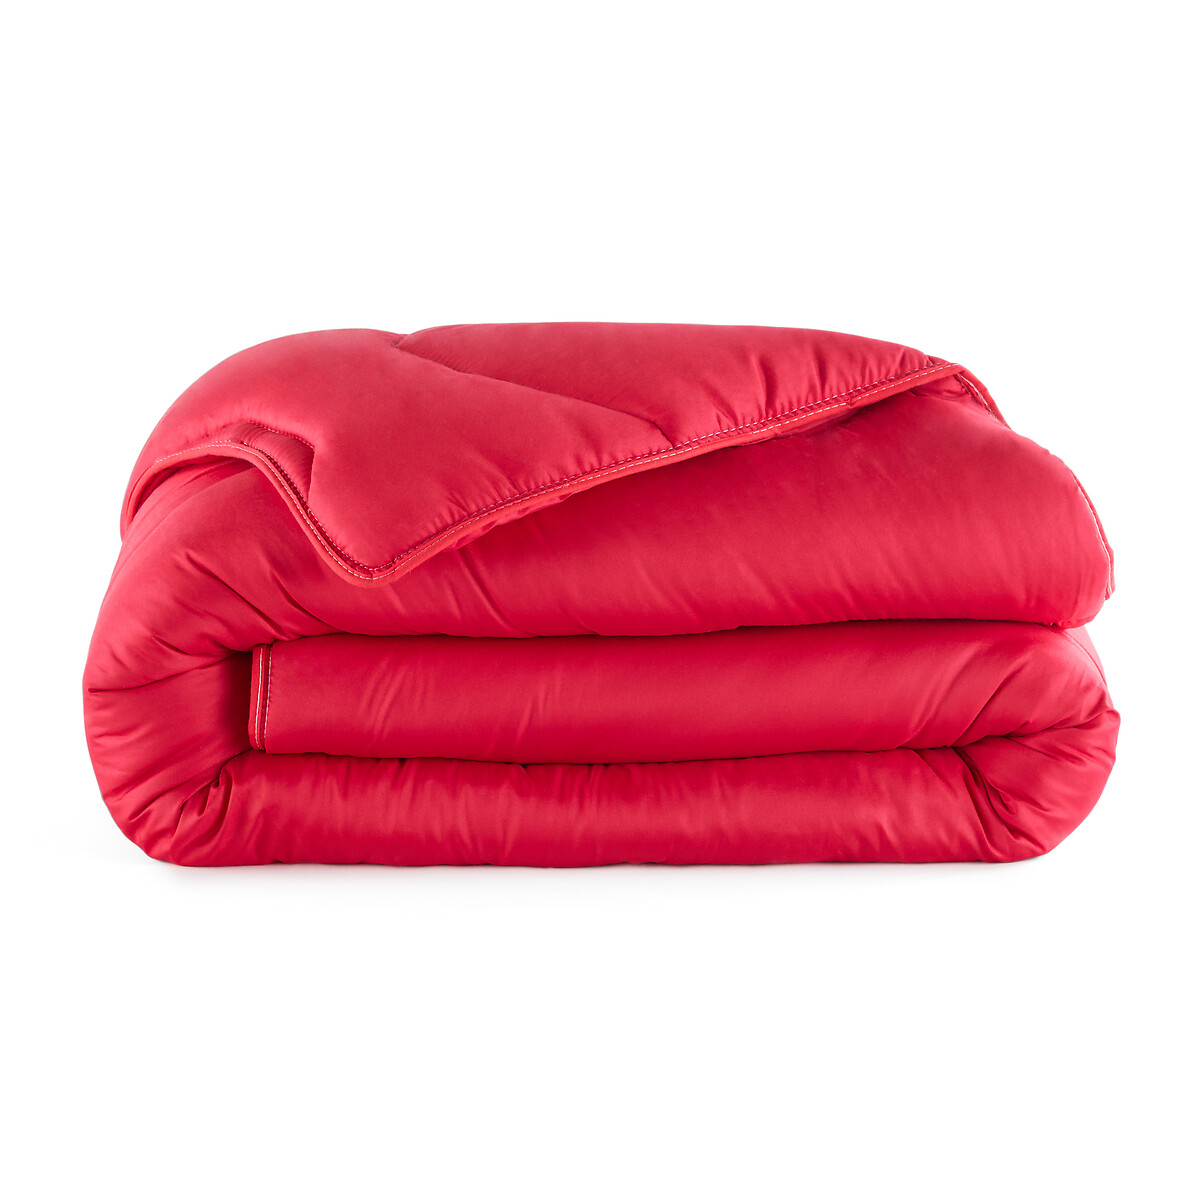 Одеяло La Redoute COLOR  полиэстера  гм 140 x 200 см красный, размер 140 x 200 см - фото 2